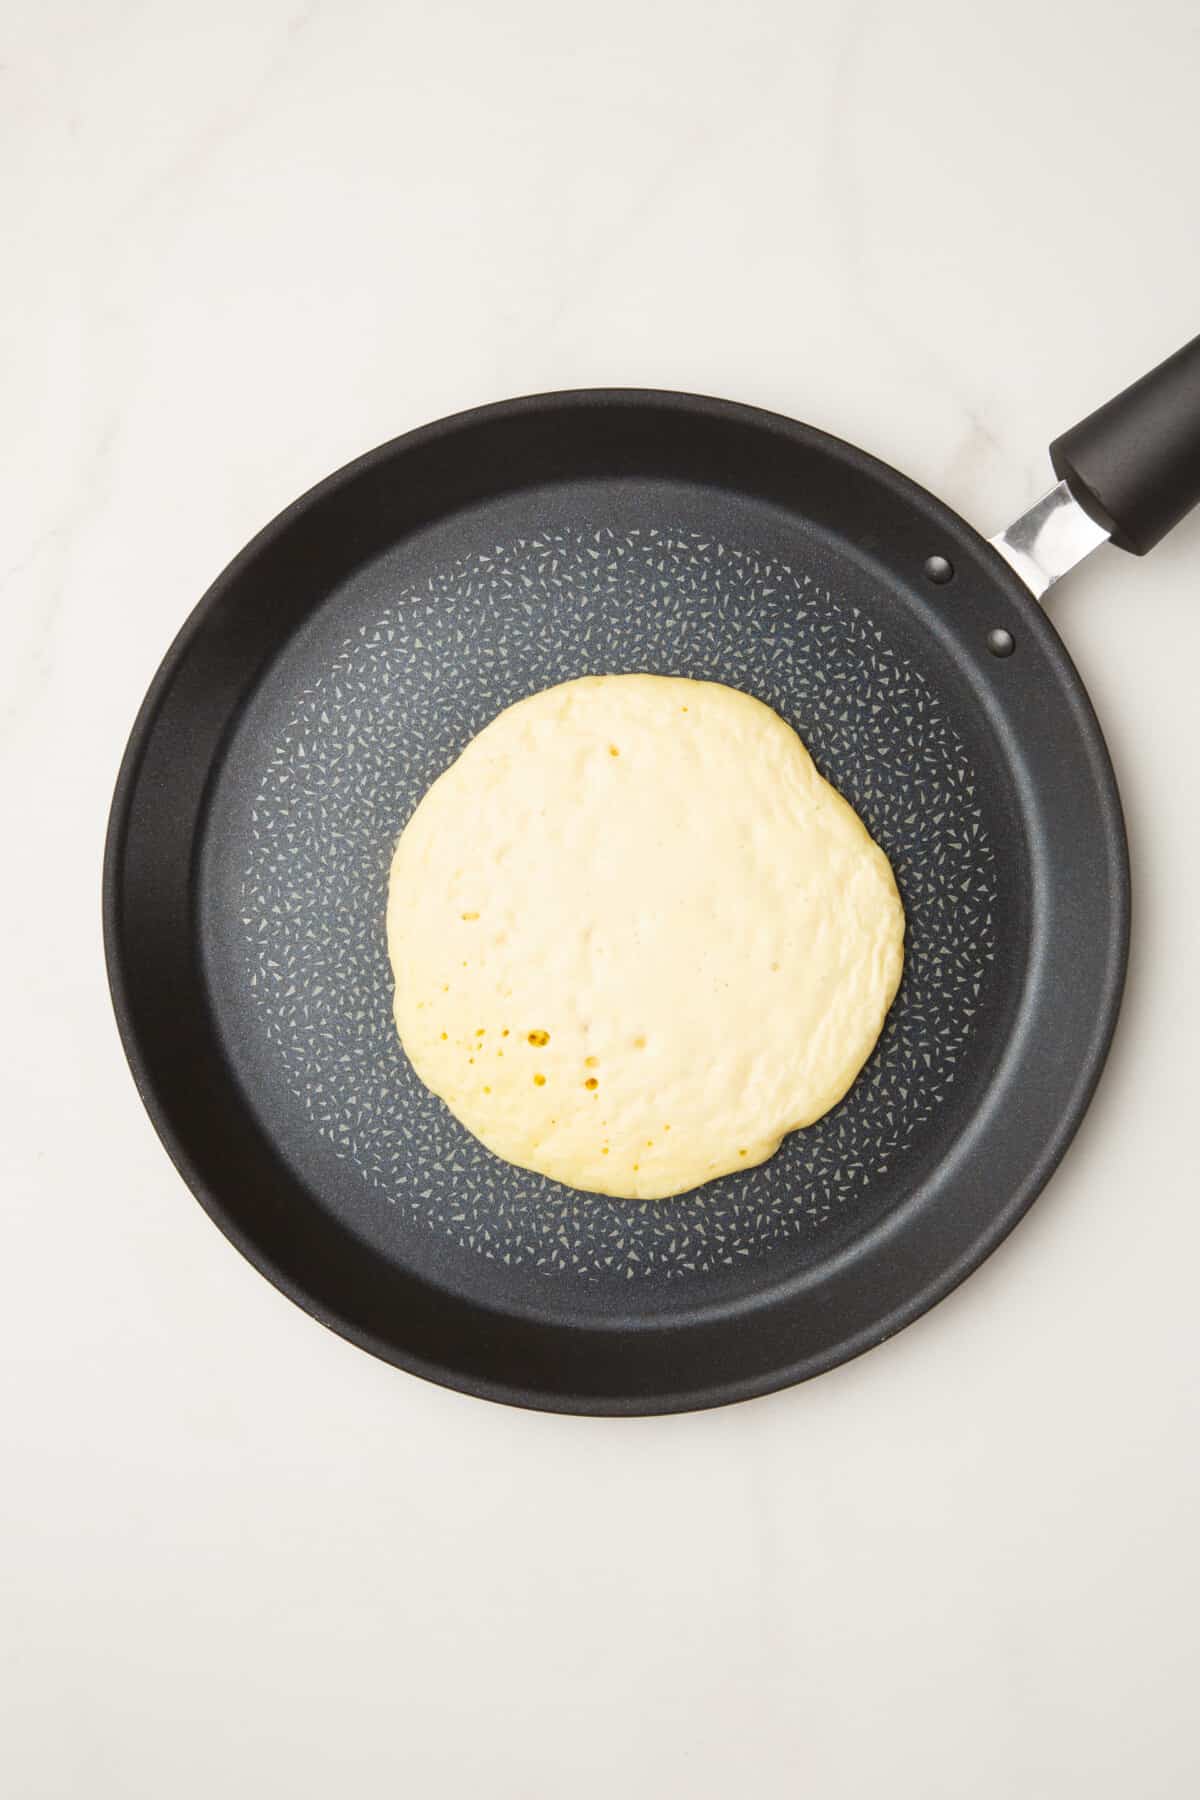 pancake ladled onto a pan.